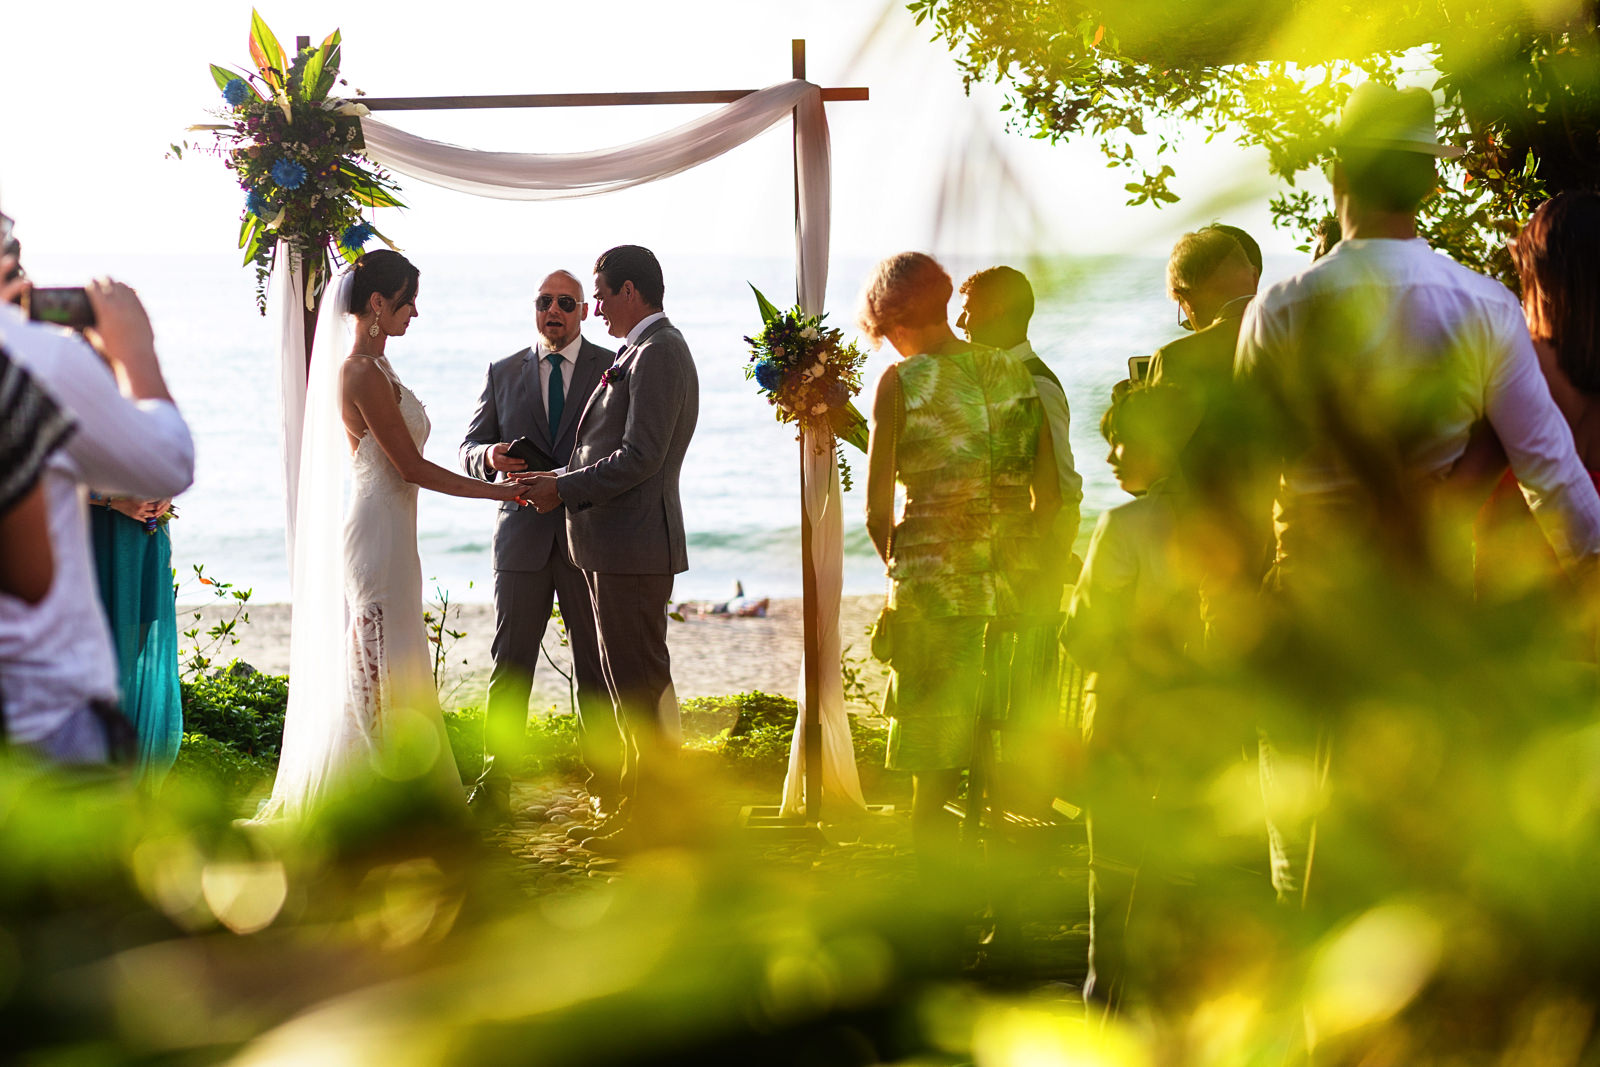 Destination wedding ceremony in process at a villa in Sayulita, Mexico